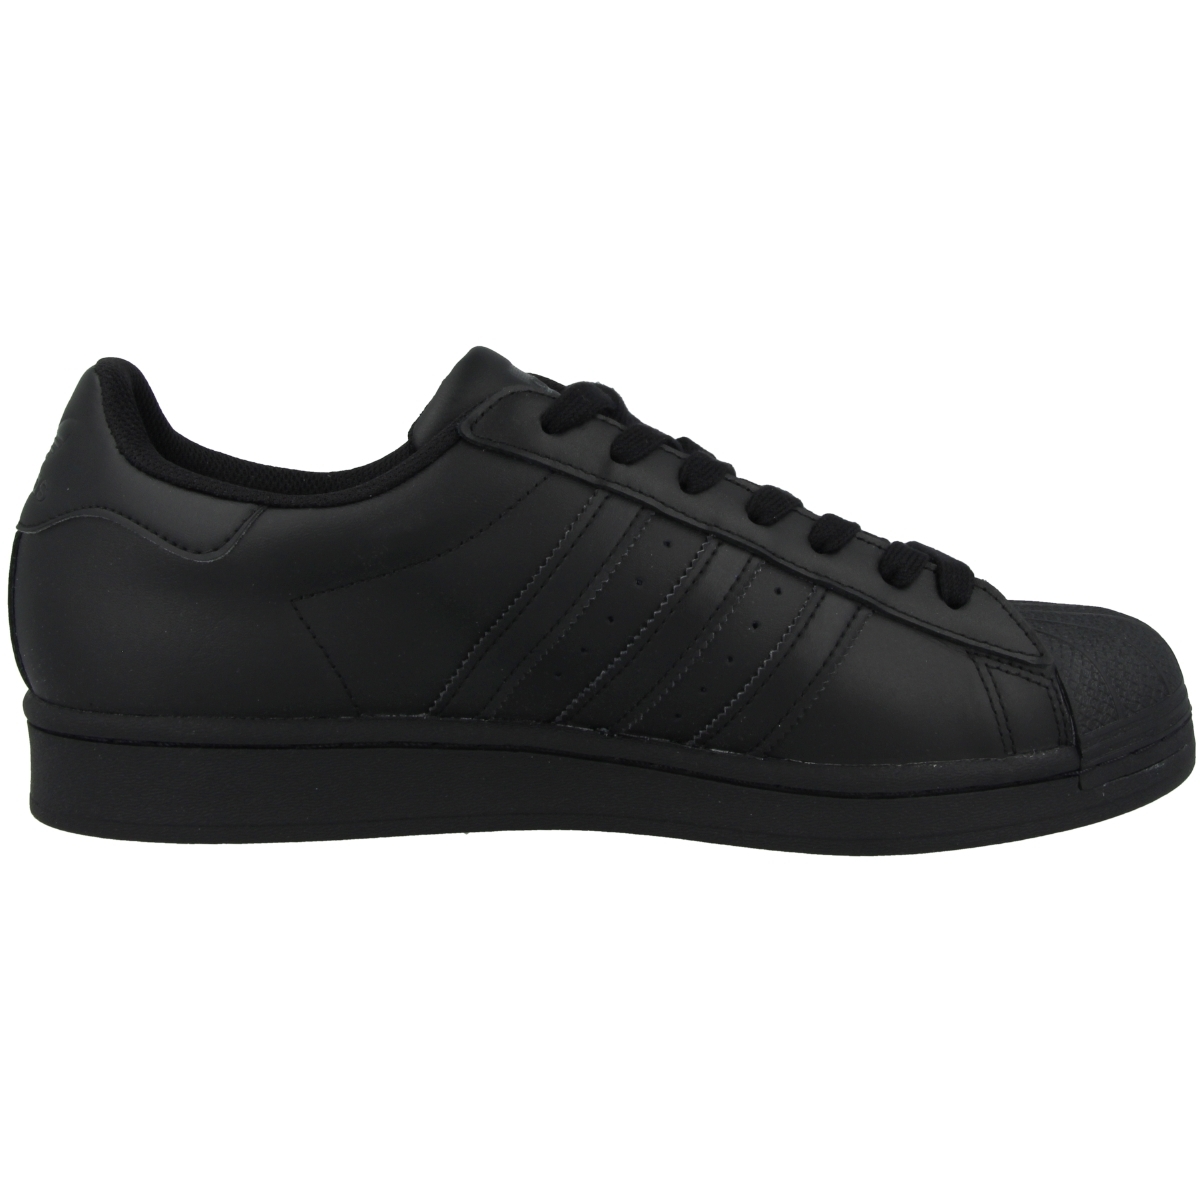 Adidas Superstar Schuhe schwarz